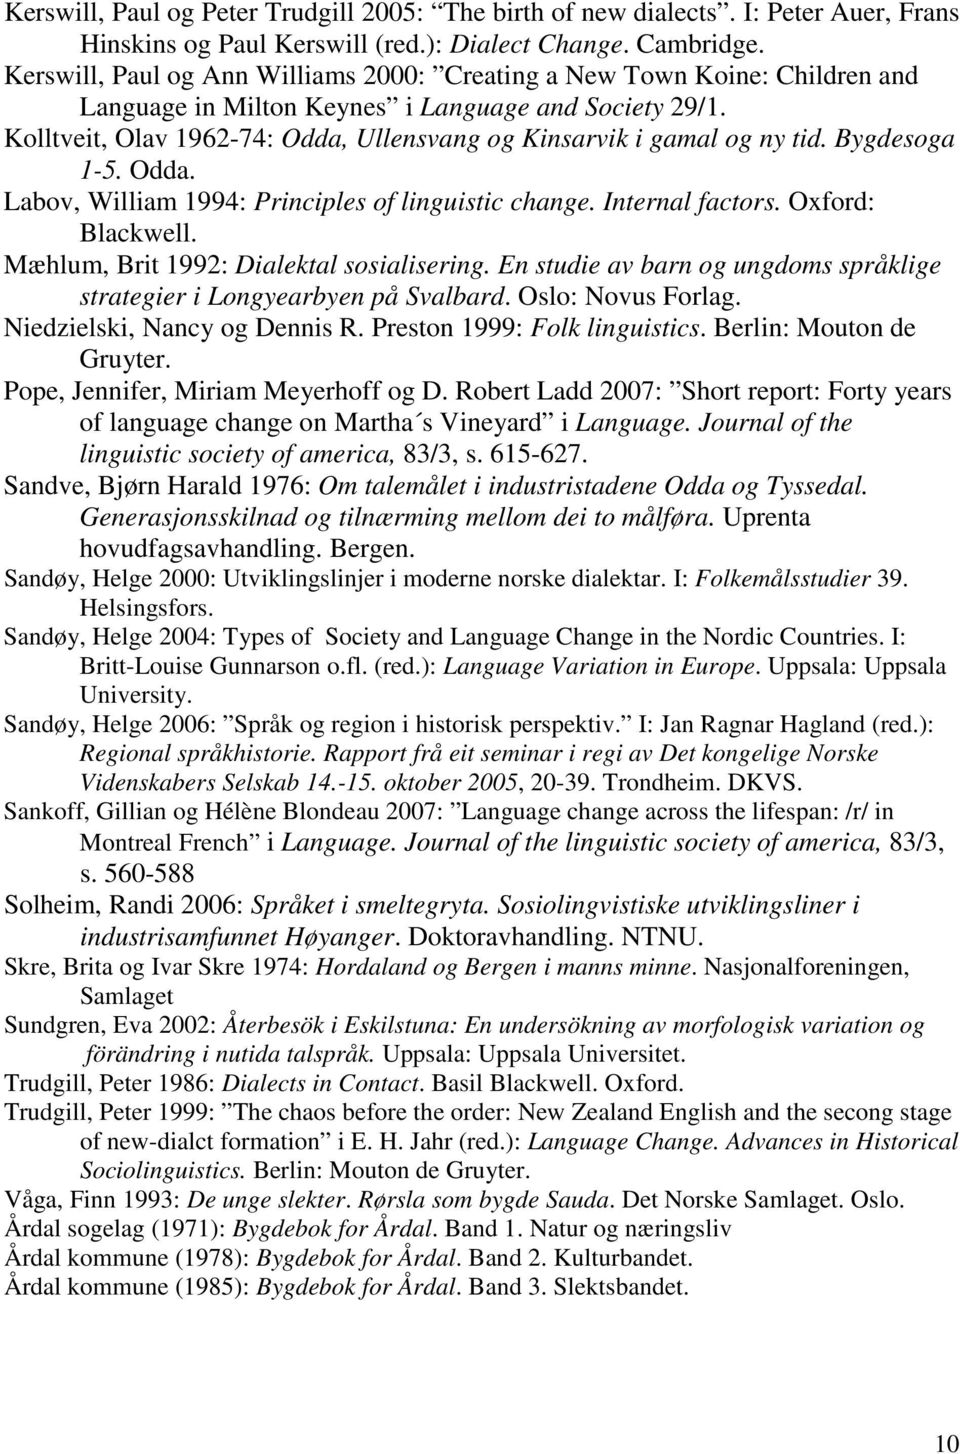 Kolltveit, Olav 1962-74: Odda, Ullensvang og Kinsarvik i gamal og ny tid. Bygdesoga 1-5. Odda. Labov, William 1994: Principles of linguistic change. Internal factors. Oxford: Blackwell.